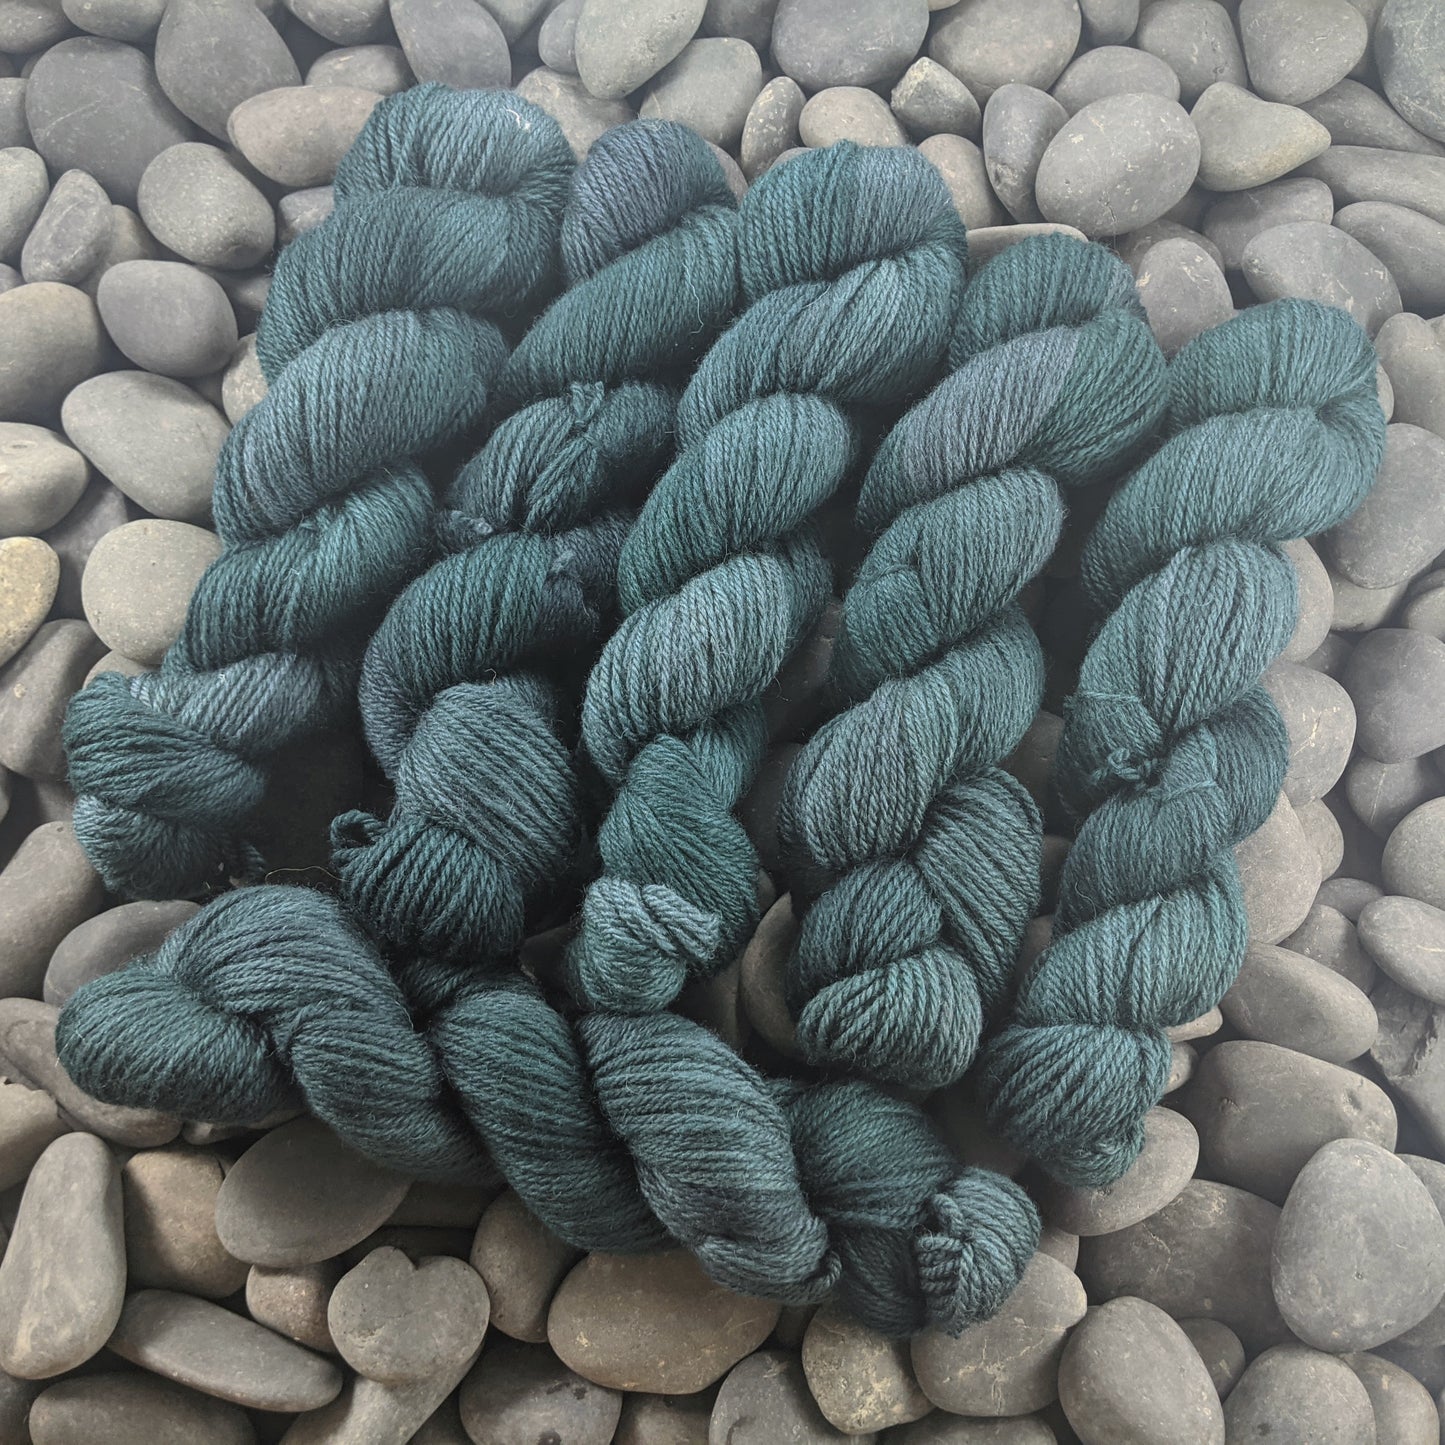 Forestry on Buoy DK (BFL/Shetland/Manx wool) yarn - 100 g